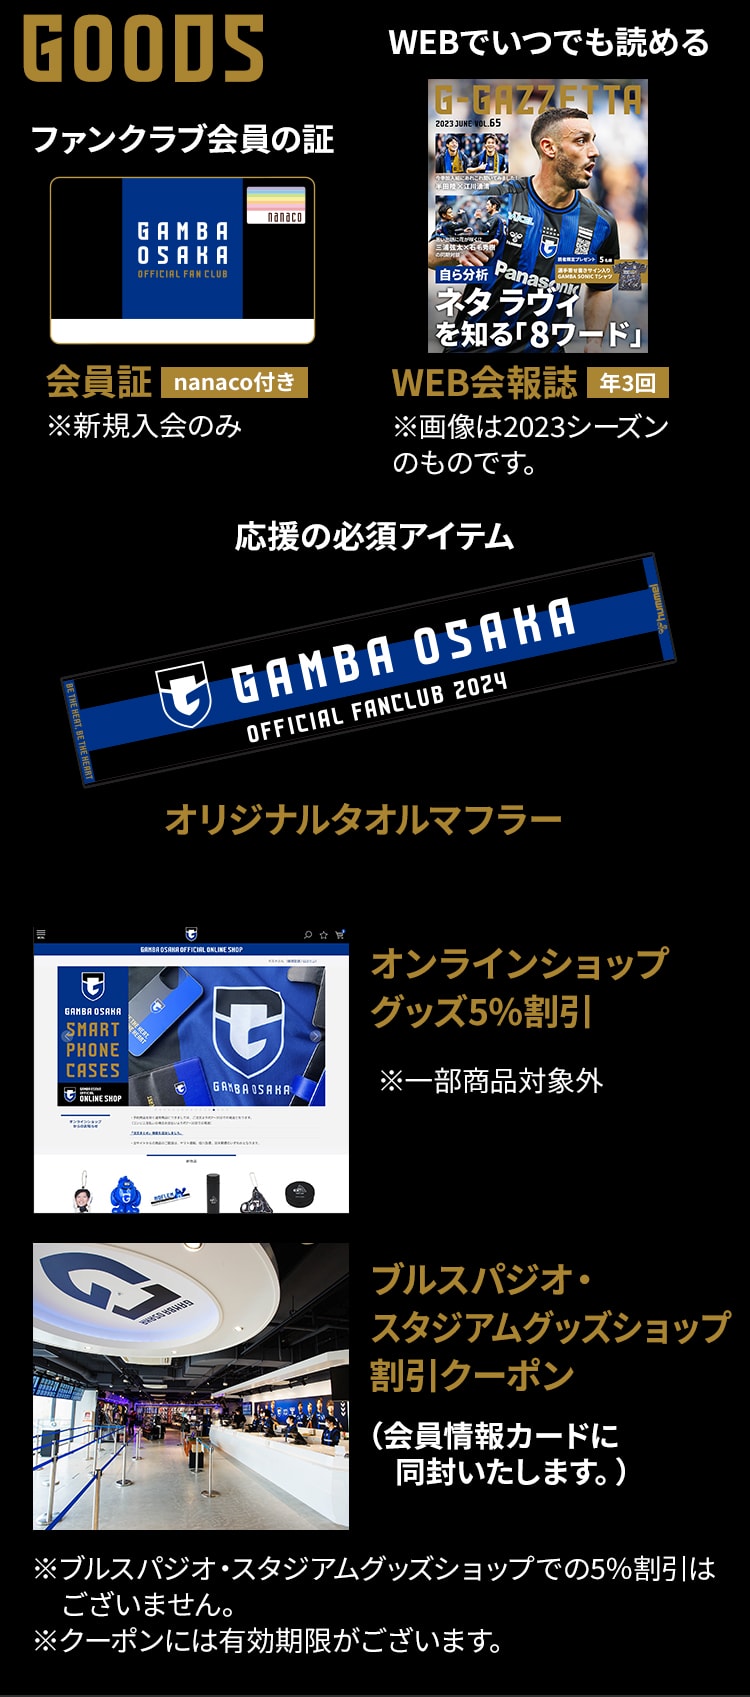 2024シーズン ファンクラブ｜ガンバ大阪オフィシャルサイト